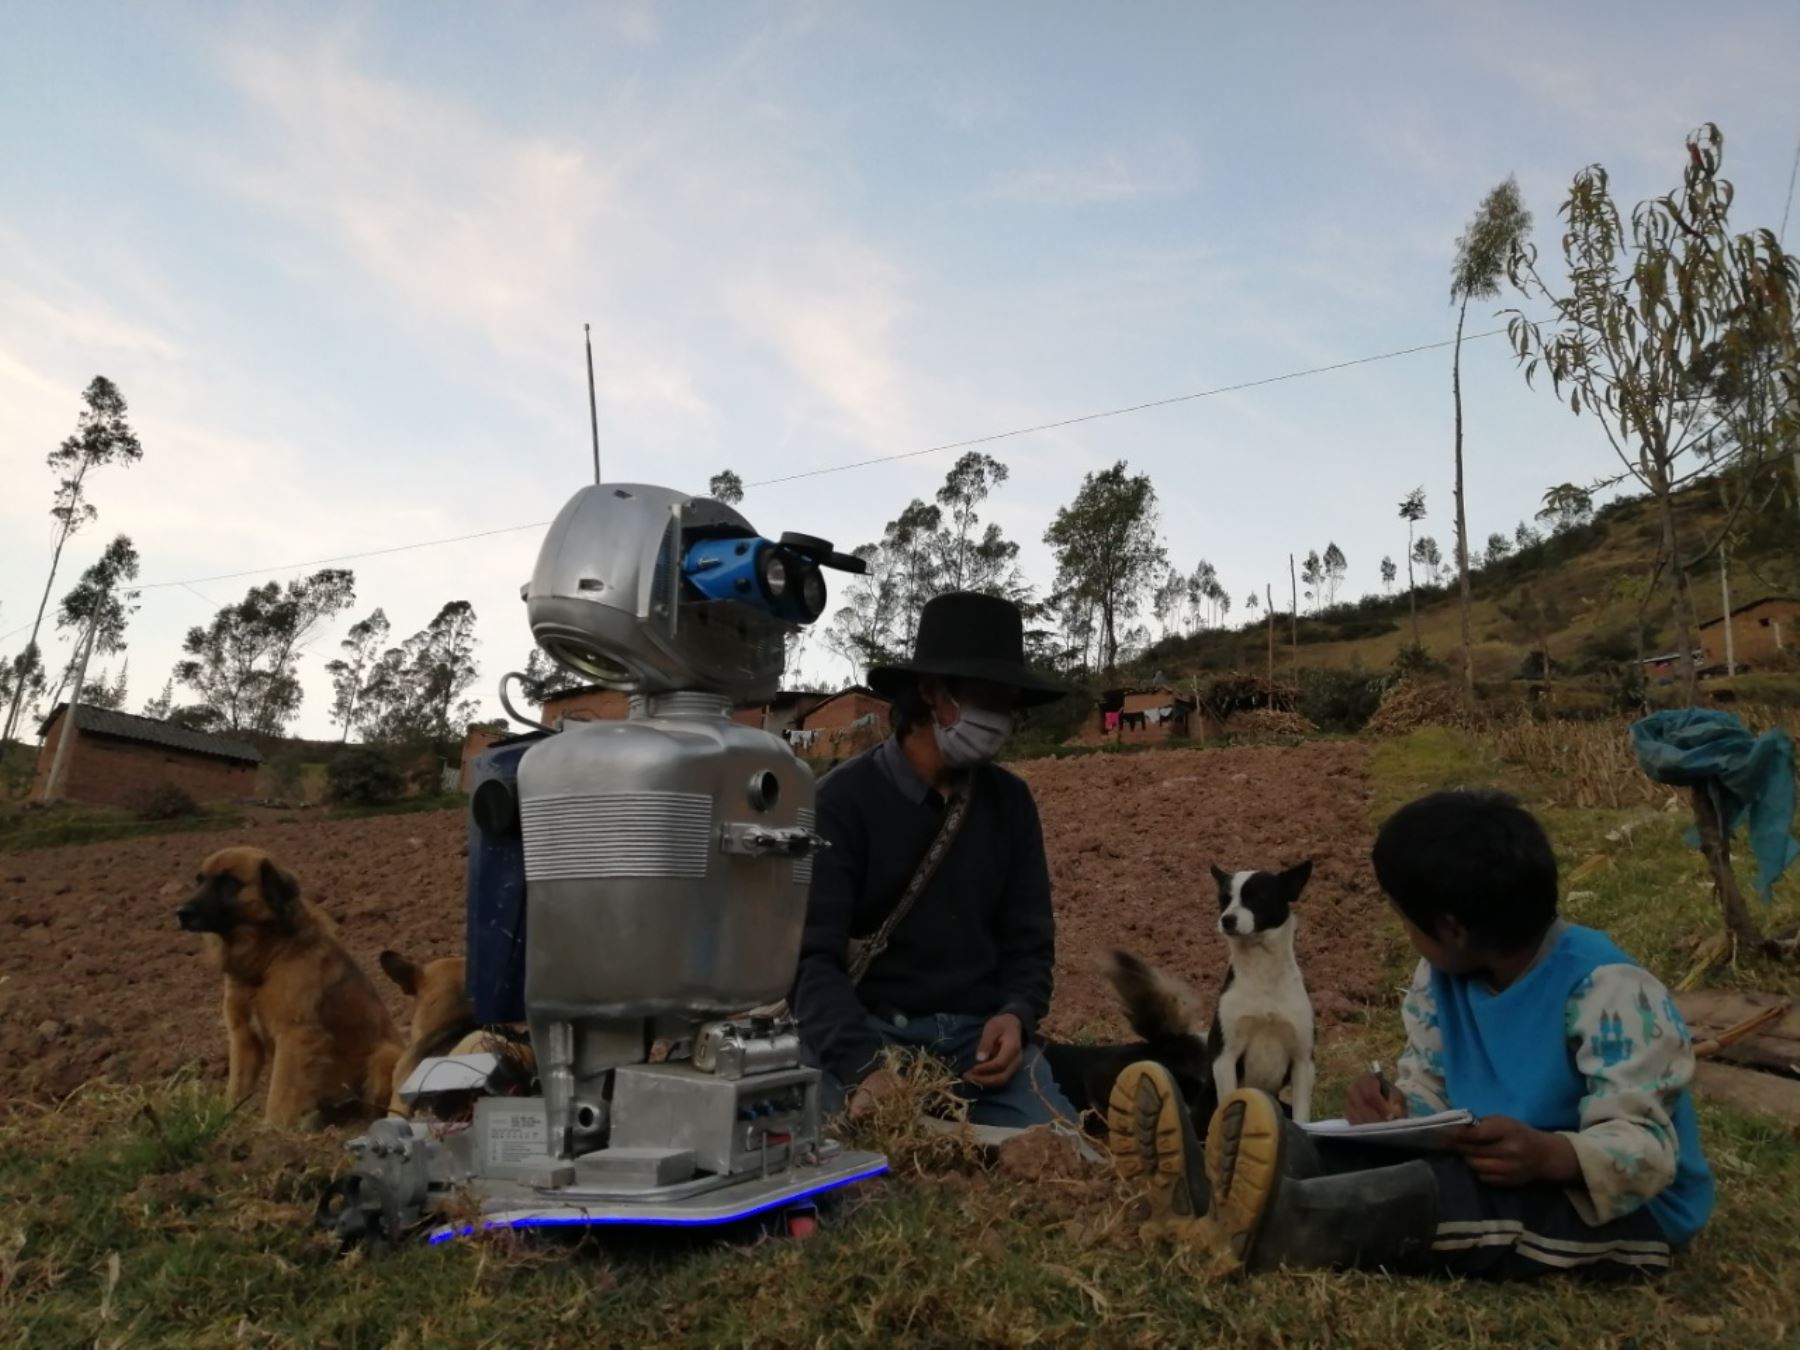 ¡Qué maravilla! Maestro crea un robot para educar a niños de escasos recursos de Perú